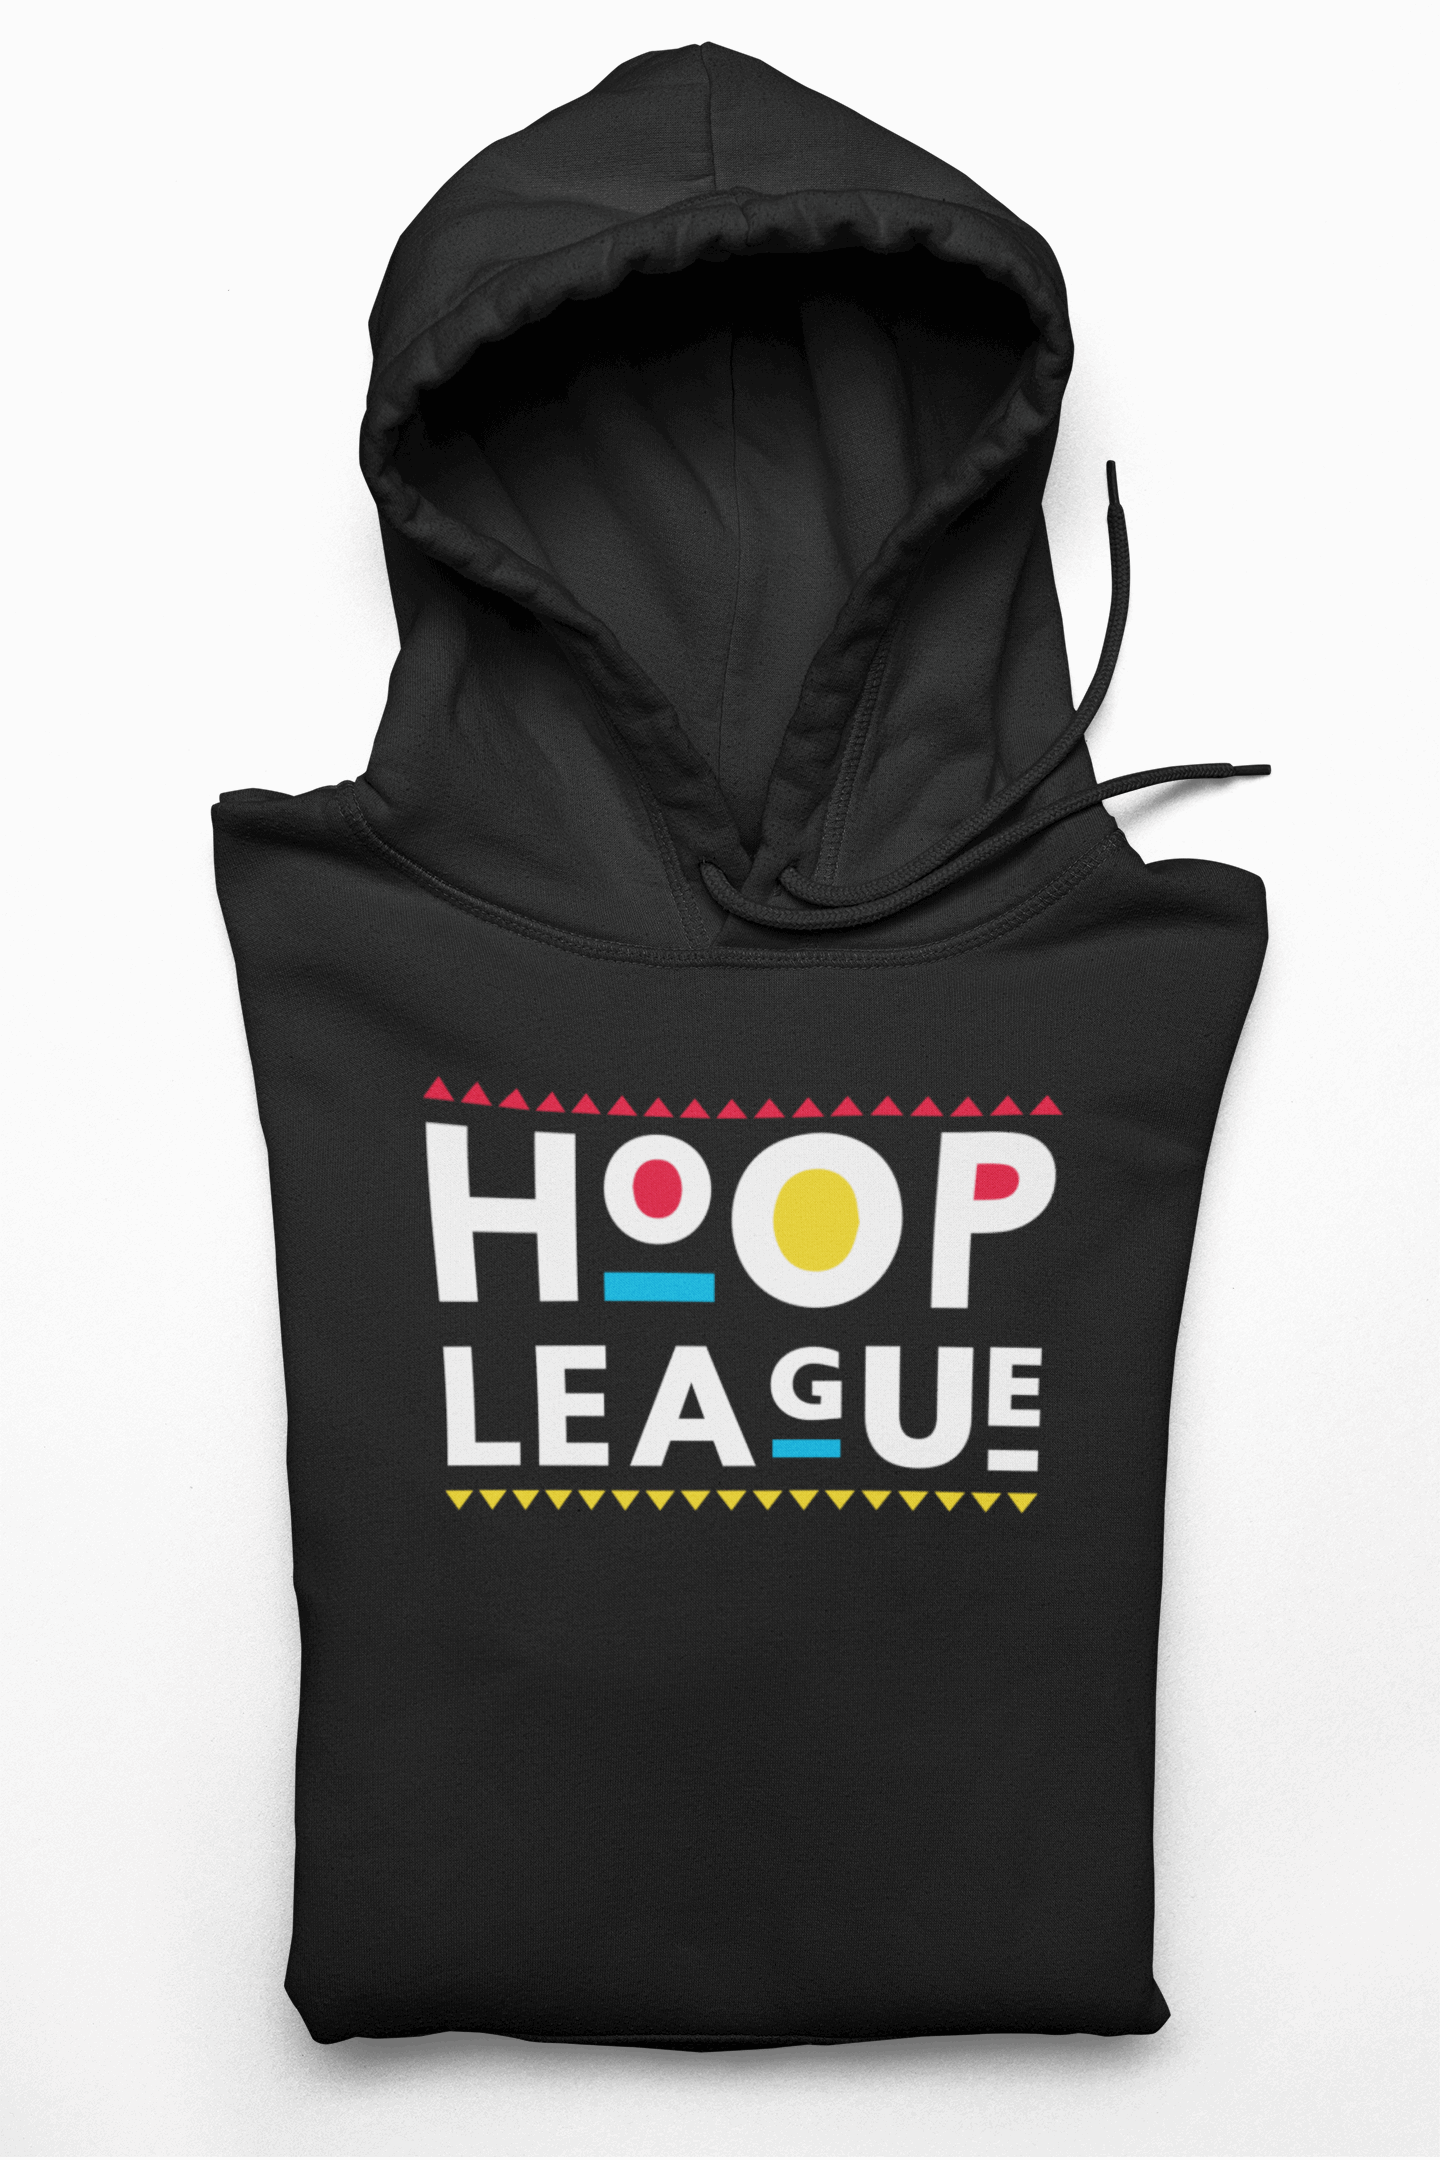 Hoop League 90's Style Pullover Hoodie Black